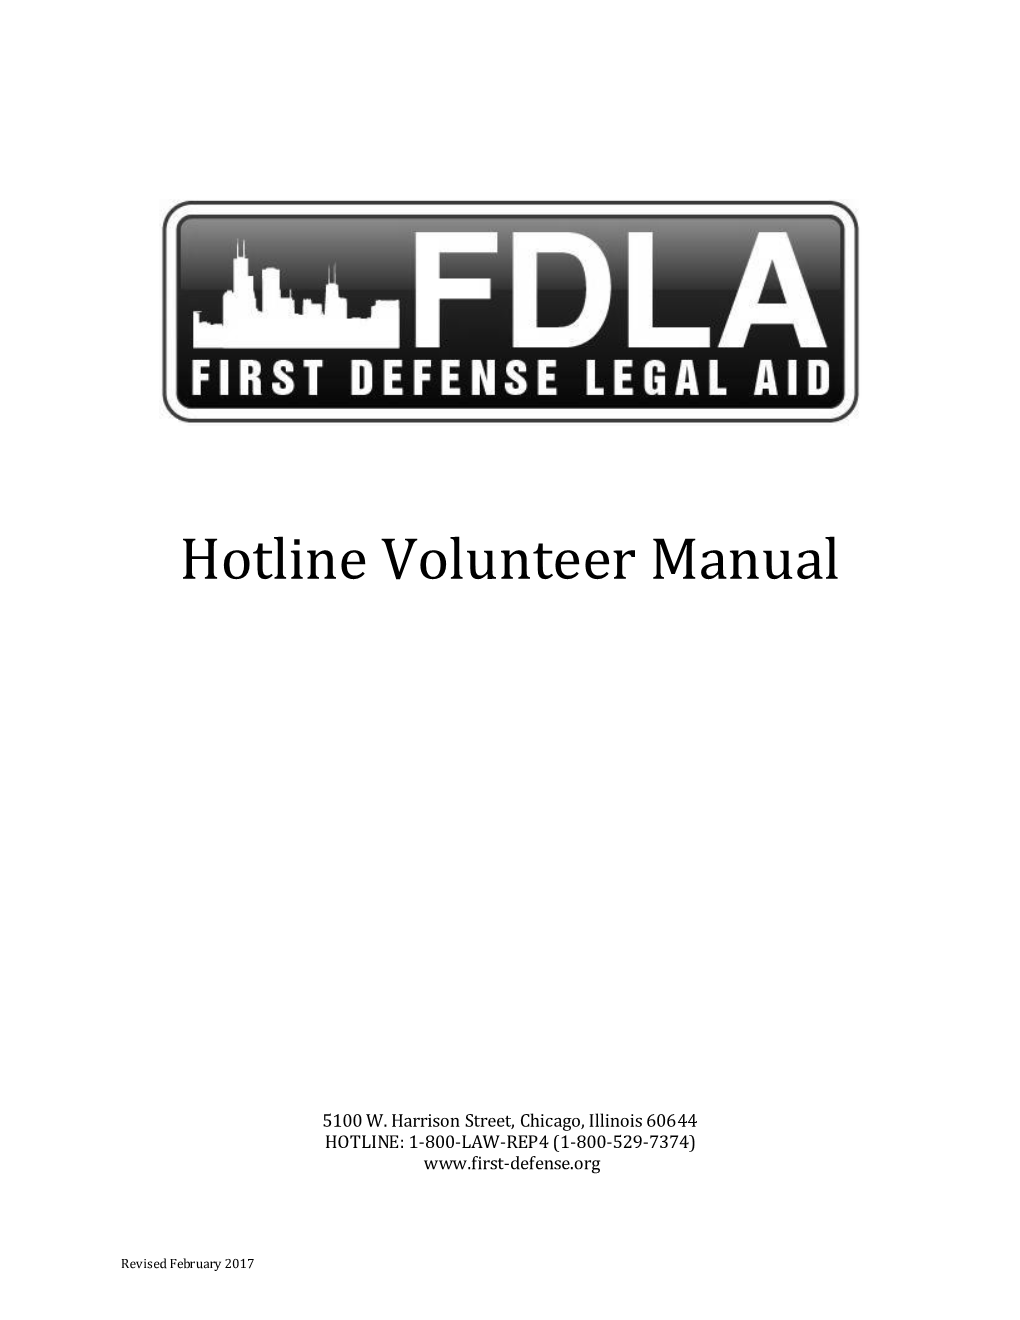 Hotline Volunteer Manual